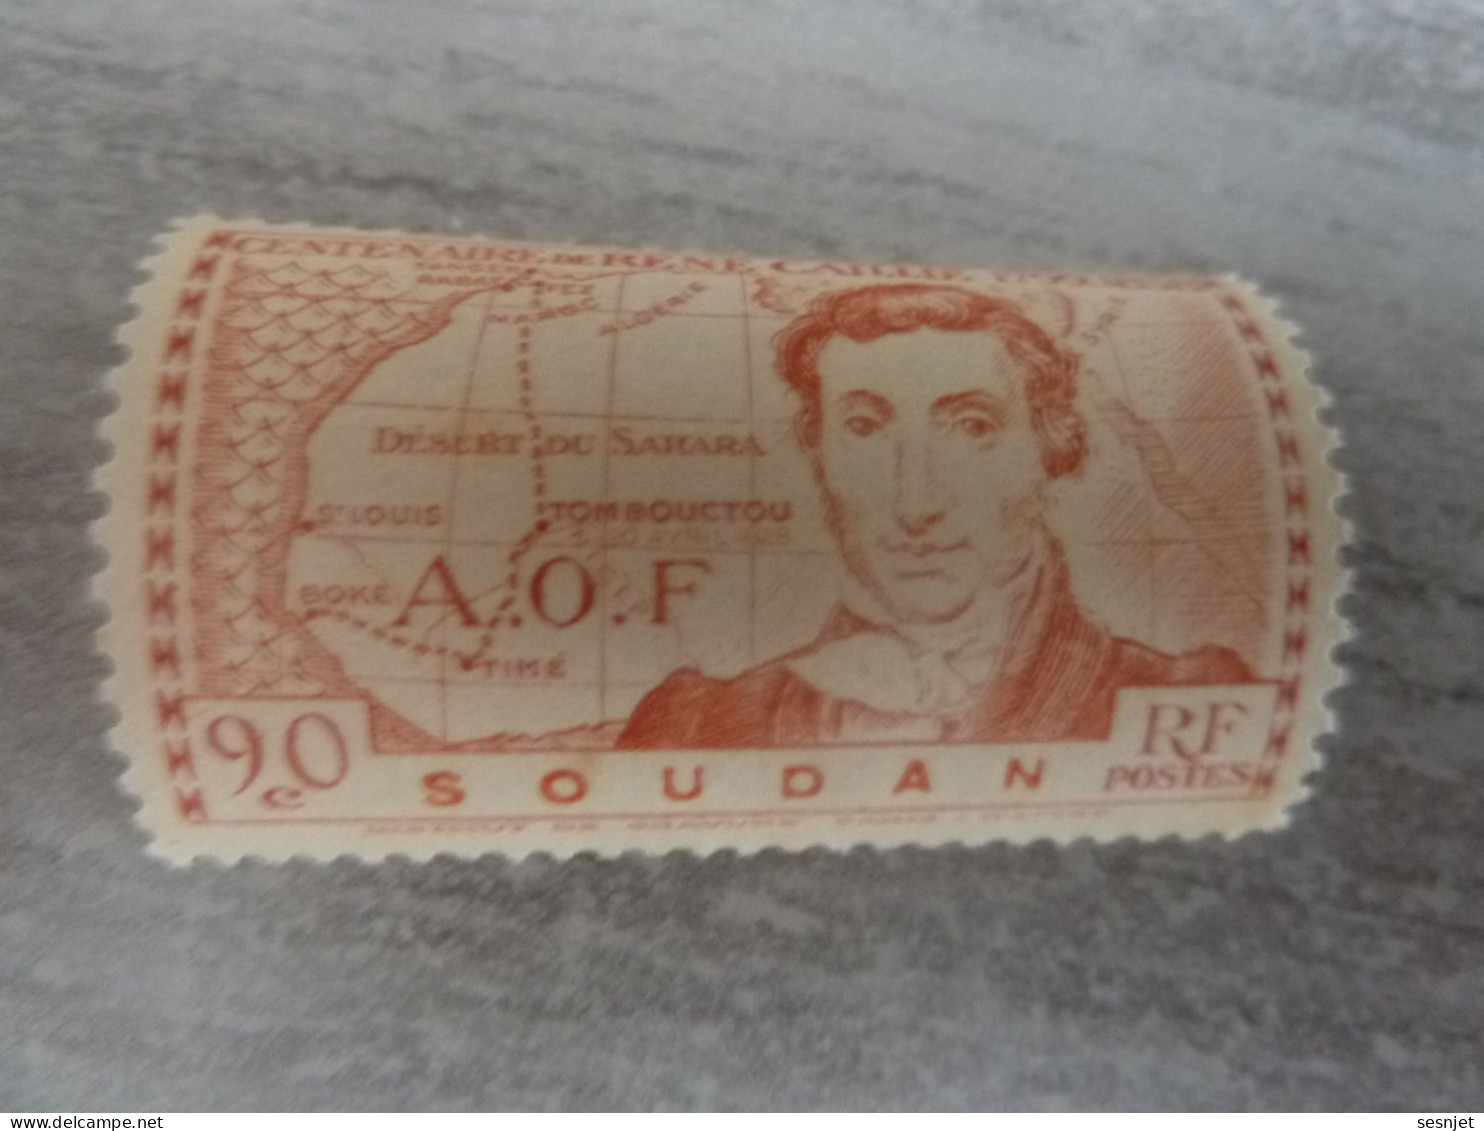 René Caillié (1709-1838) - A.o.f. - Soudan - 90c. - Yt 100 - Rouge Terne - Neuf Sans Trace De Charnière - Année 1939 - - Unused Stamps